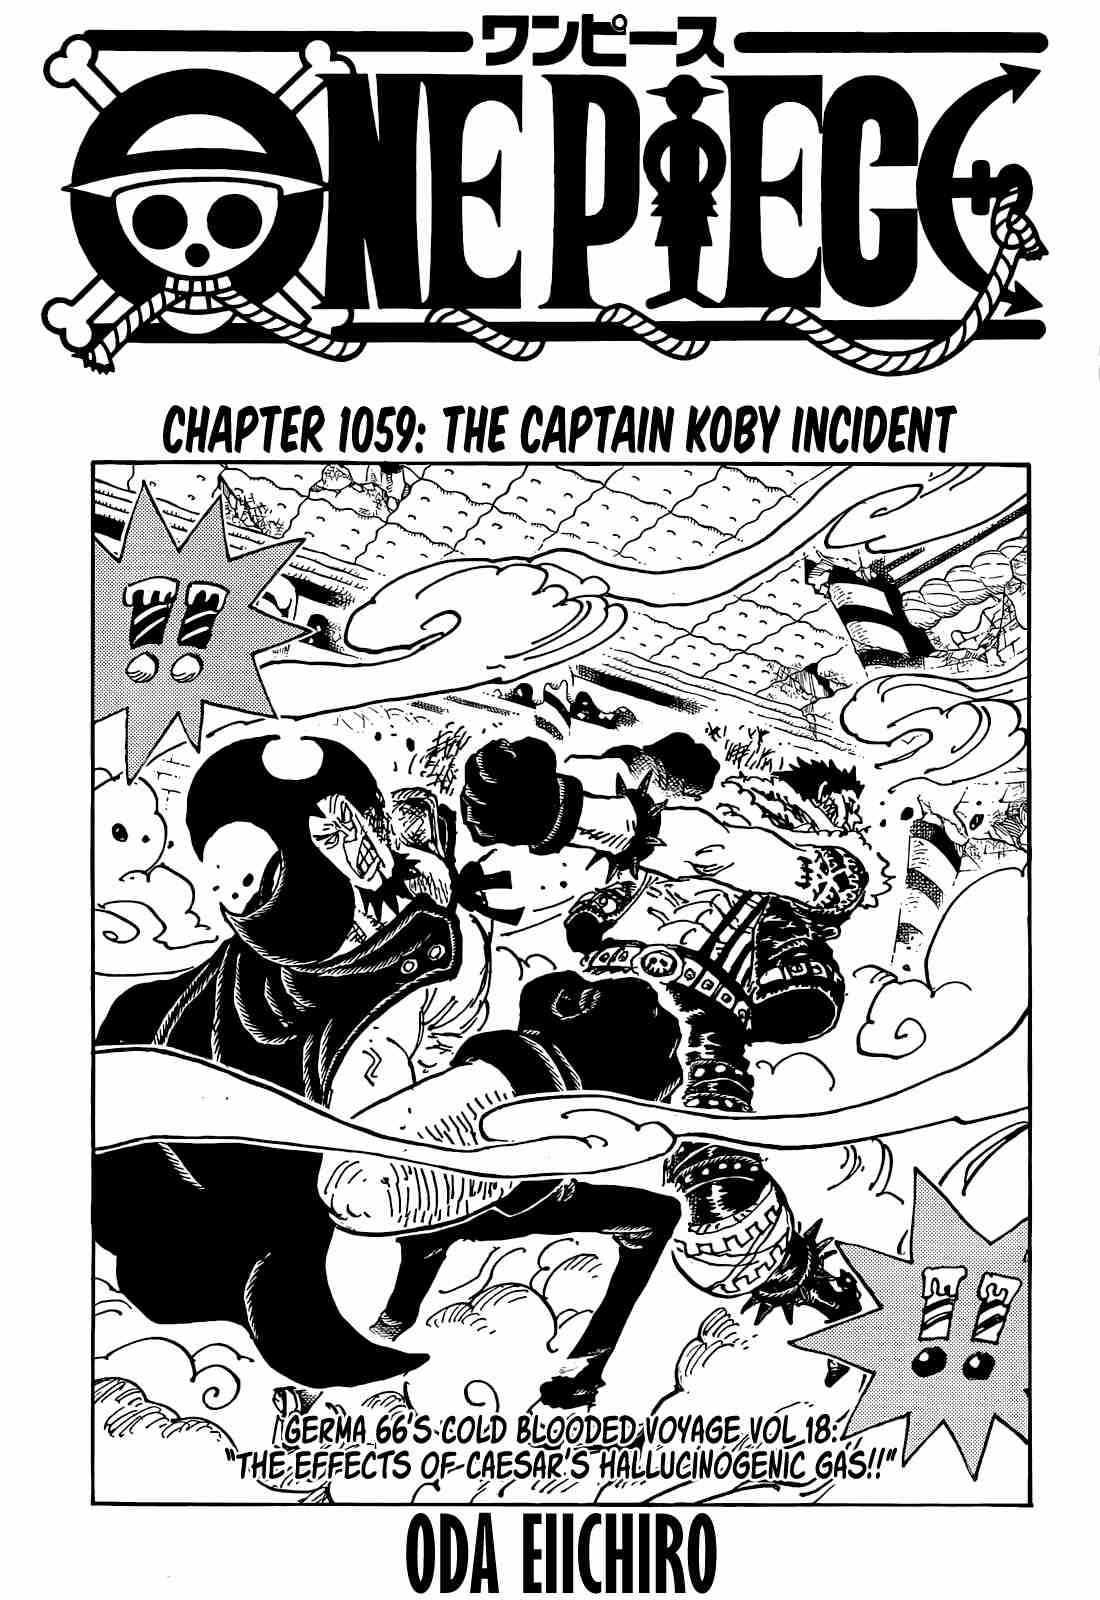 Read One Piece Chapter 1022 on Mangakakalot